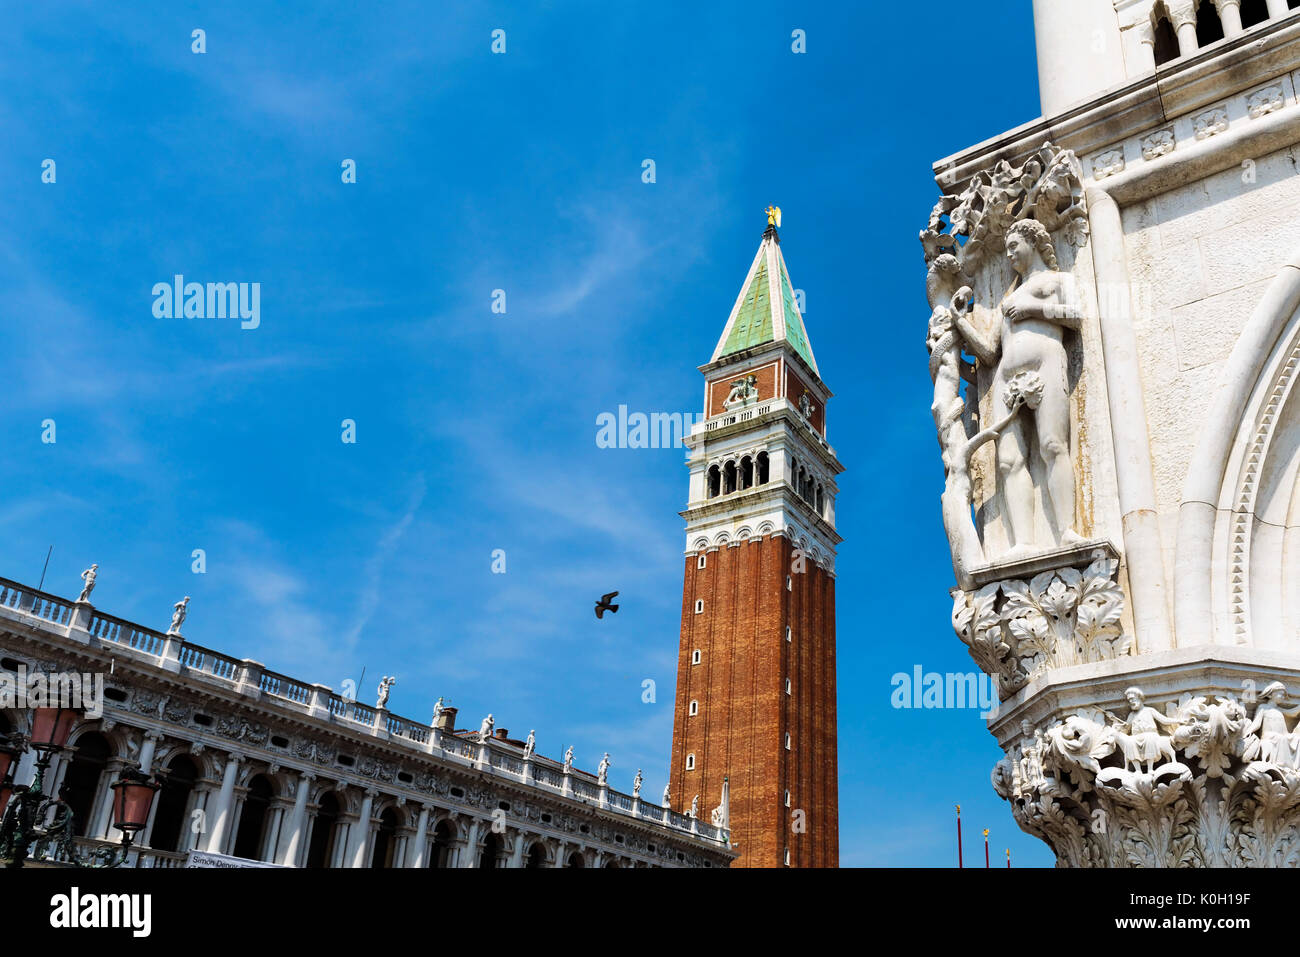 El Campanario de San Marcos - Campanile; Venecia, ubicado en la Piazza San Marco. Es uno de los símbolos más reconocibles de la ciudad. Foto de stock